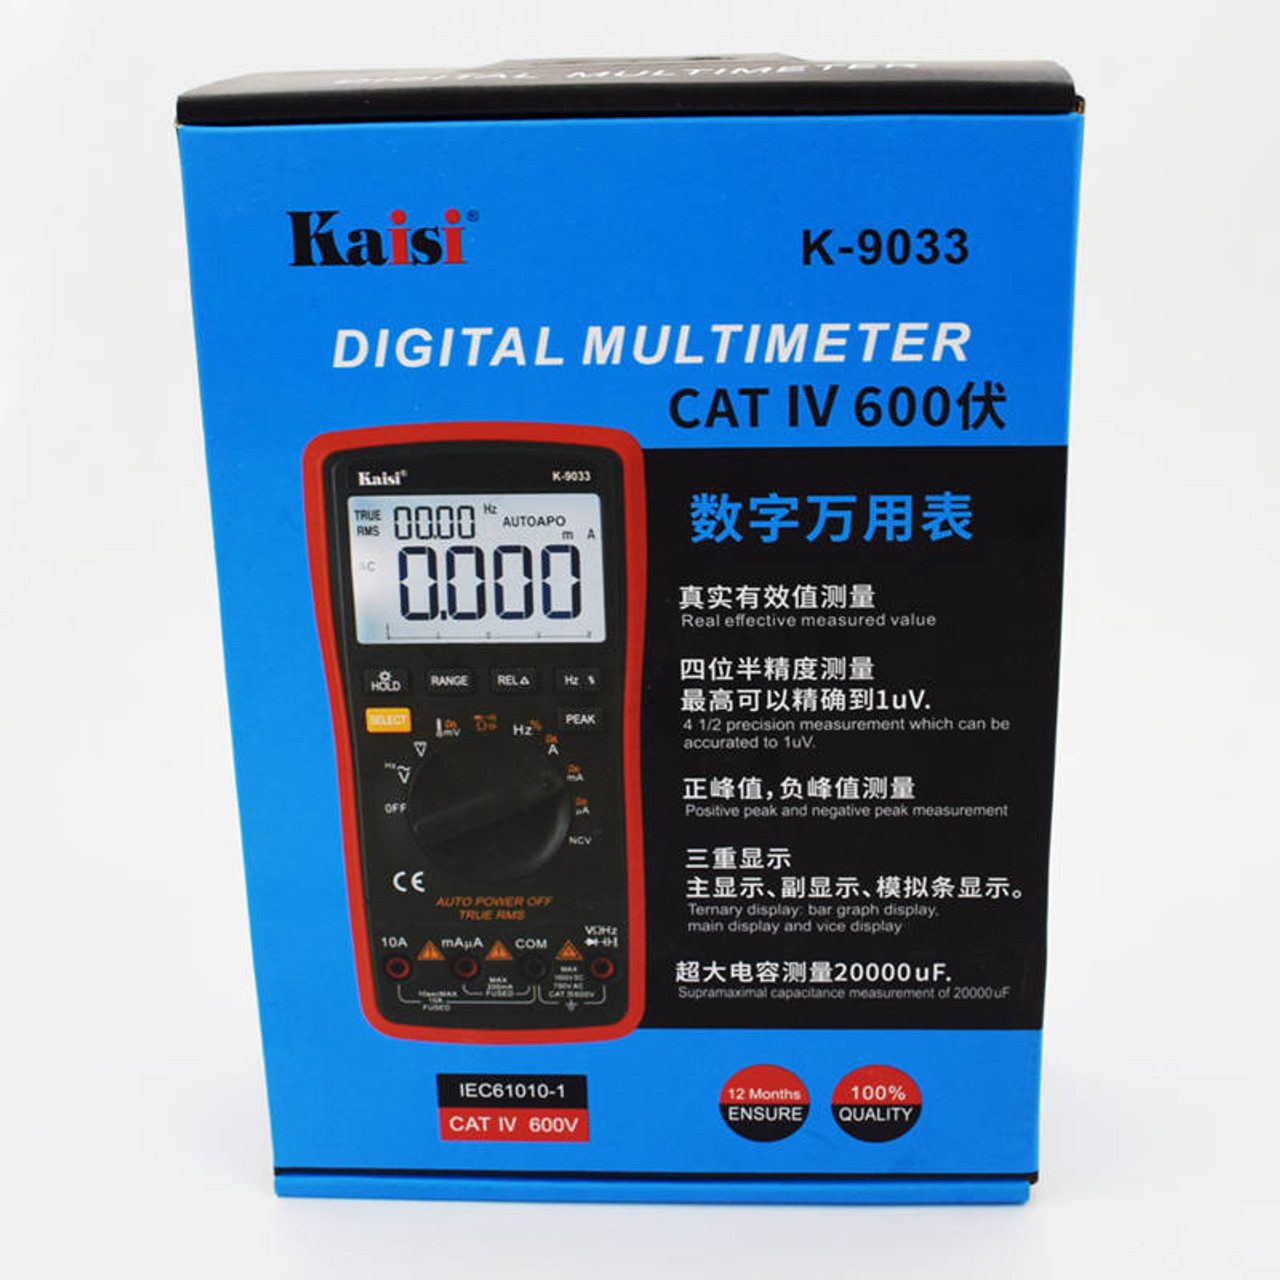 Digital Multimeter Auto Range Multi-meter 20,000 Counts True RMS Measuring  AC/DC Voltage & Curren